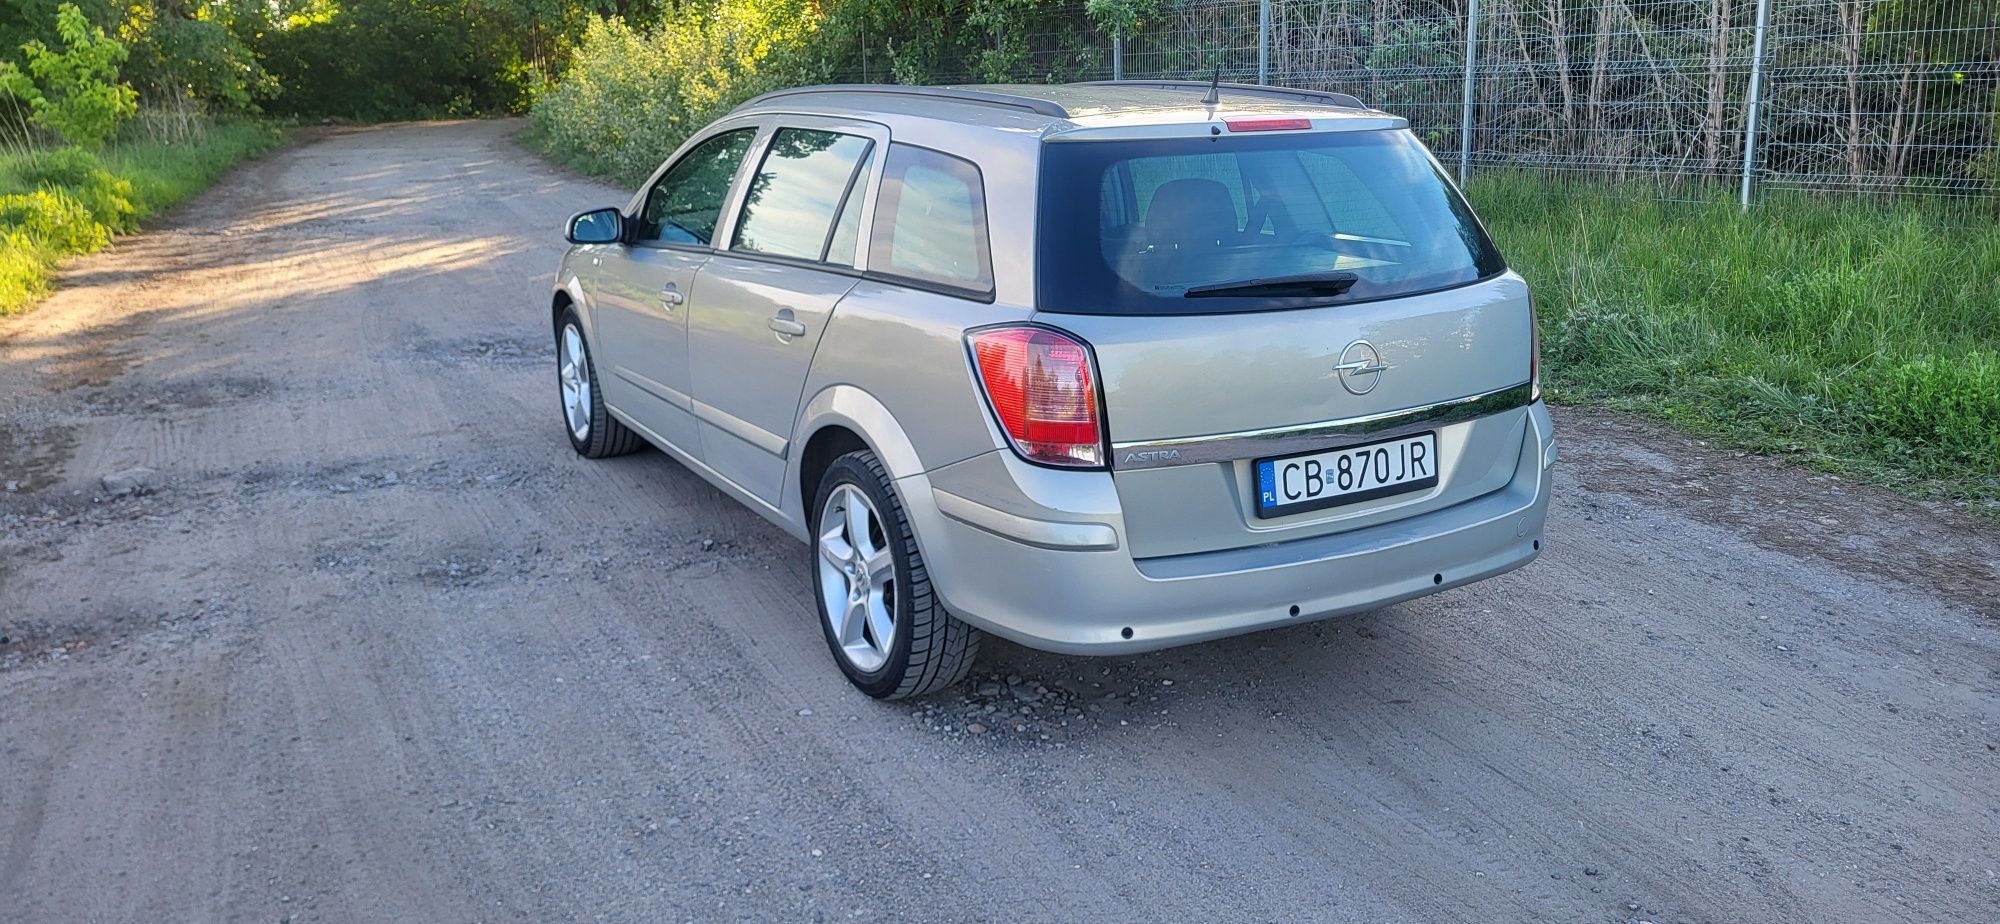 Opel Astra 3 H kombi 1.4 benzyna klimatyzacja alusy 17